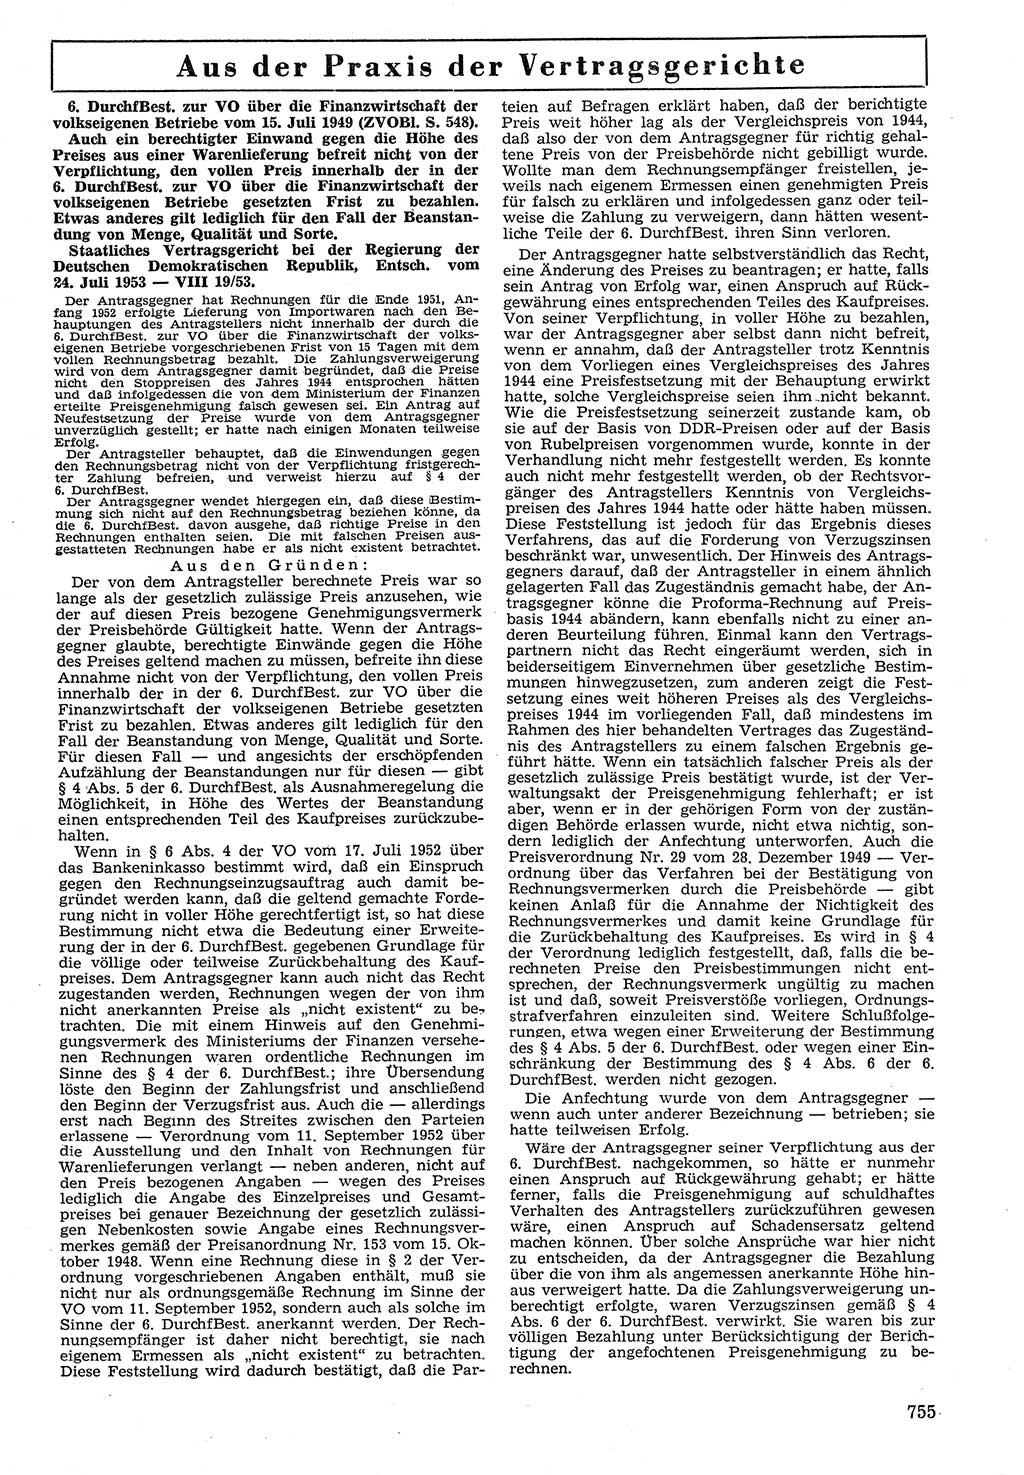 Neue Justiz (NJ), Zeitschrift für Recht und Rechtswissenschaft [Deutsche Demokratische Republik (DDR)], 7. Jahrgang 1953, Seite 755 (NJ DDR 1953, S. 755)